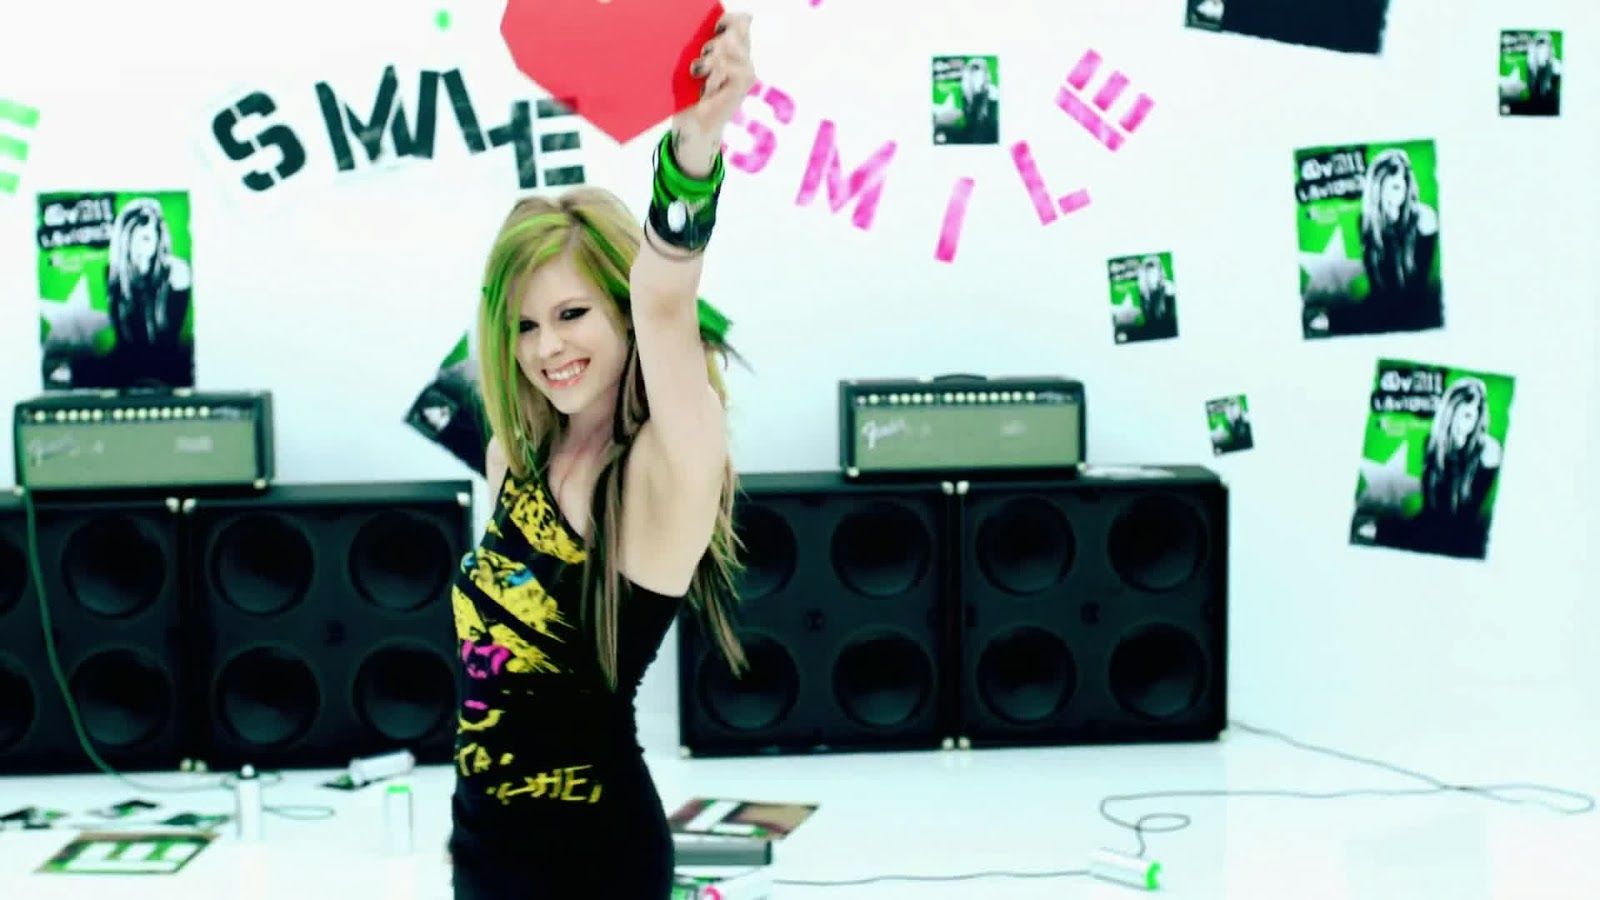 Avril Lavigne Screenshots Picture in 1080HD. Avril lavigne, Beauty, Smile wallpaper